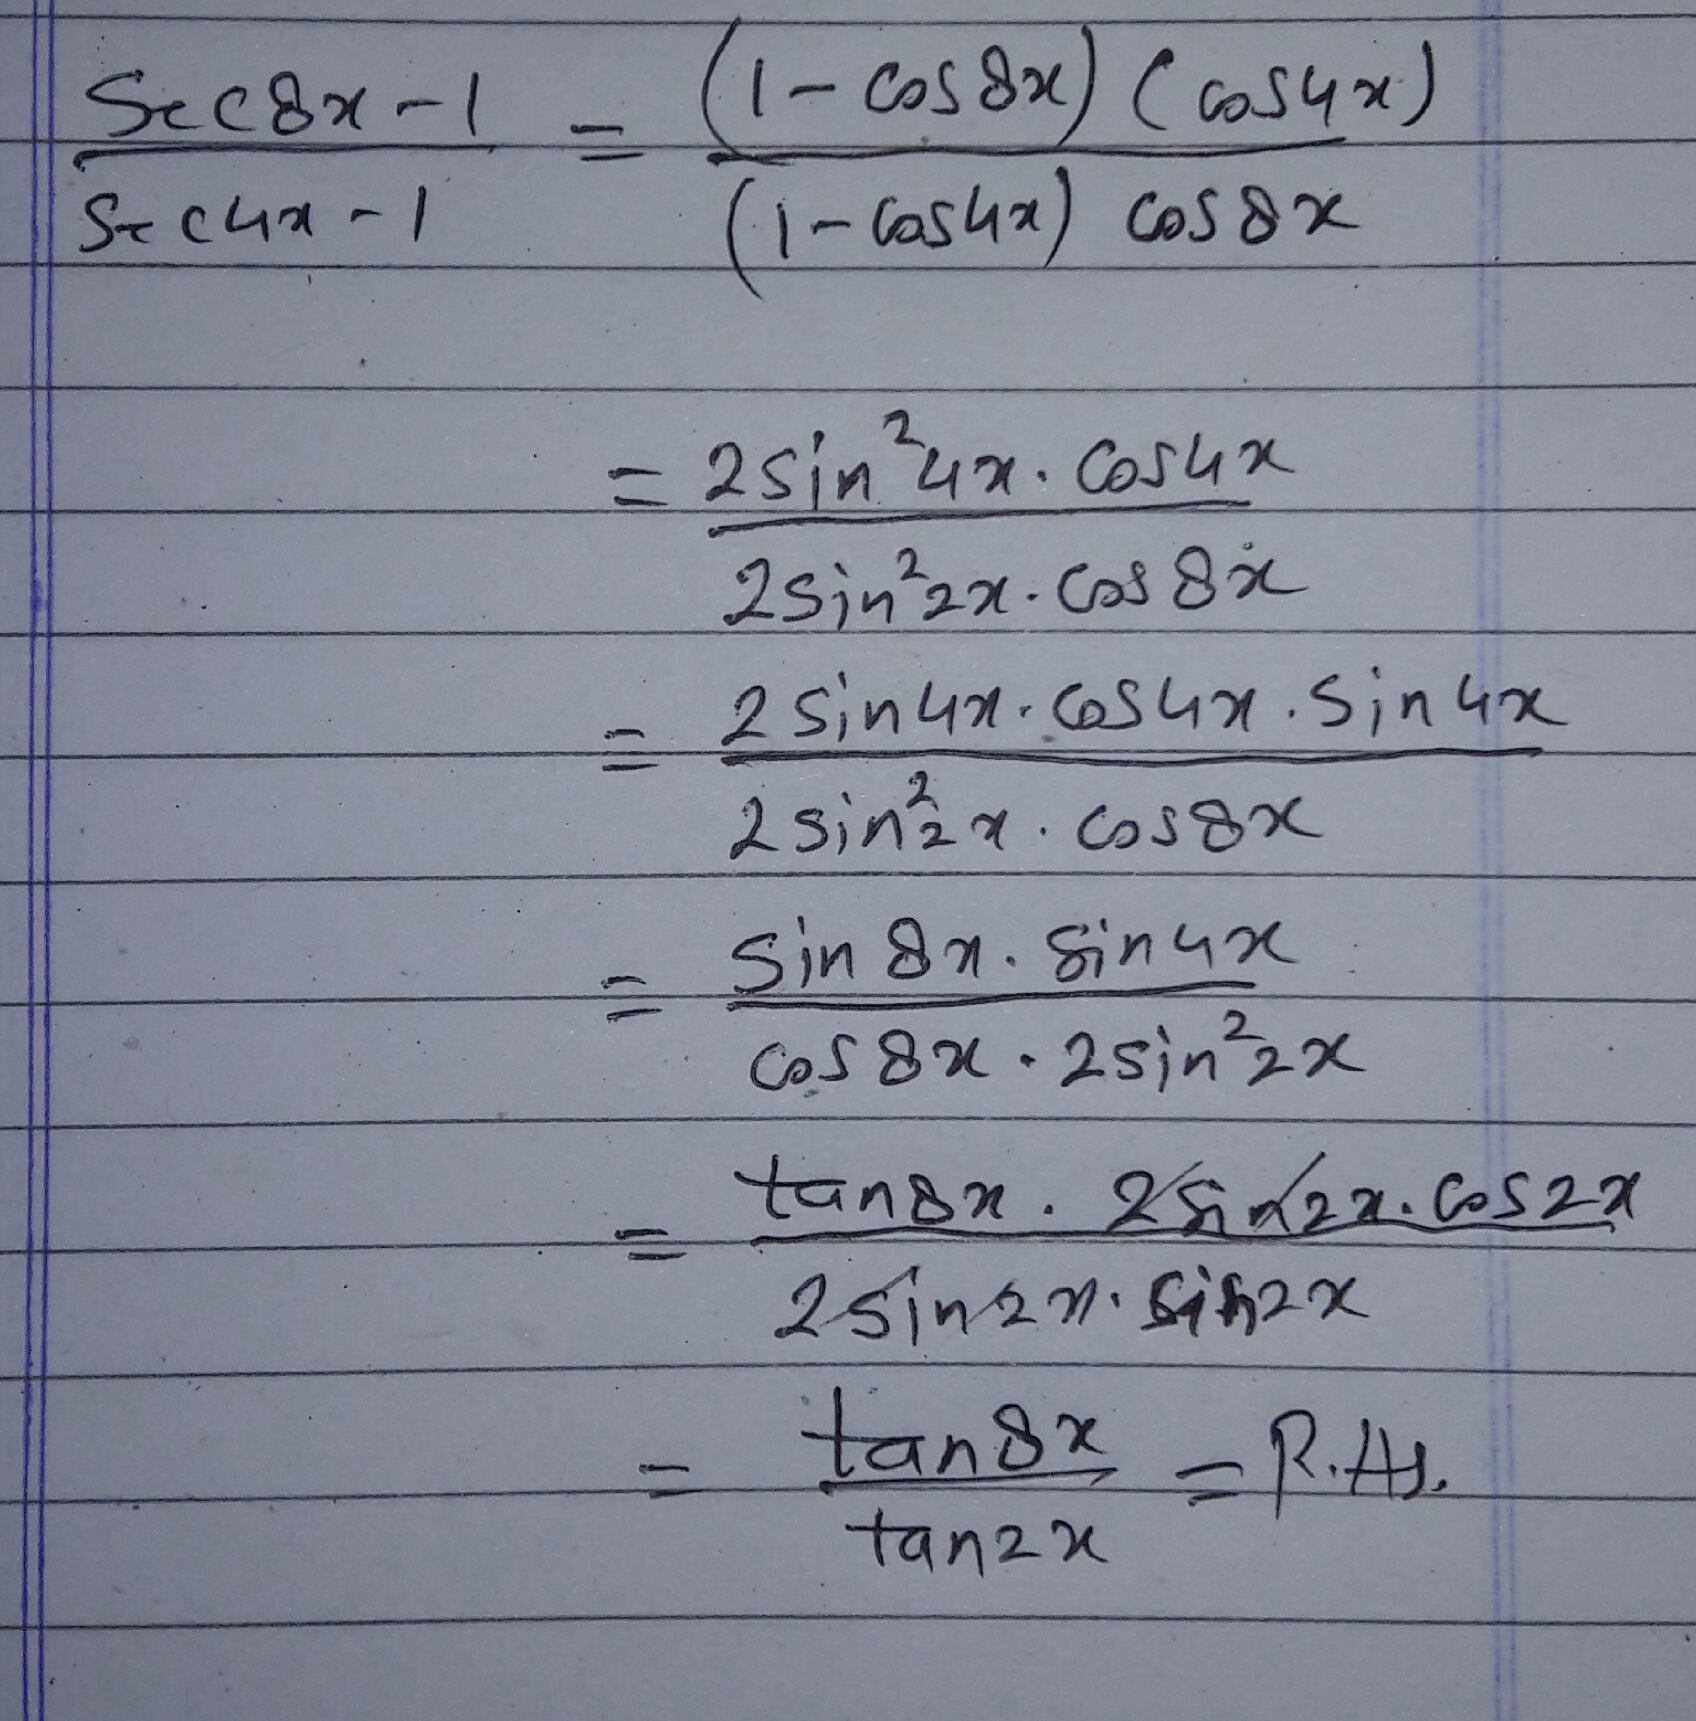 Prove That Sec8x 1 Sec4x 1 Tan8x Tan2x